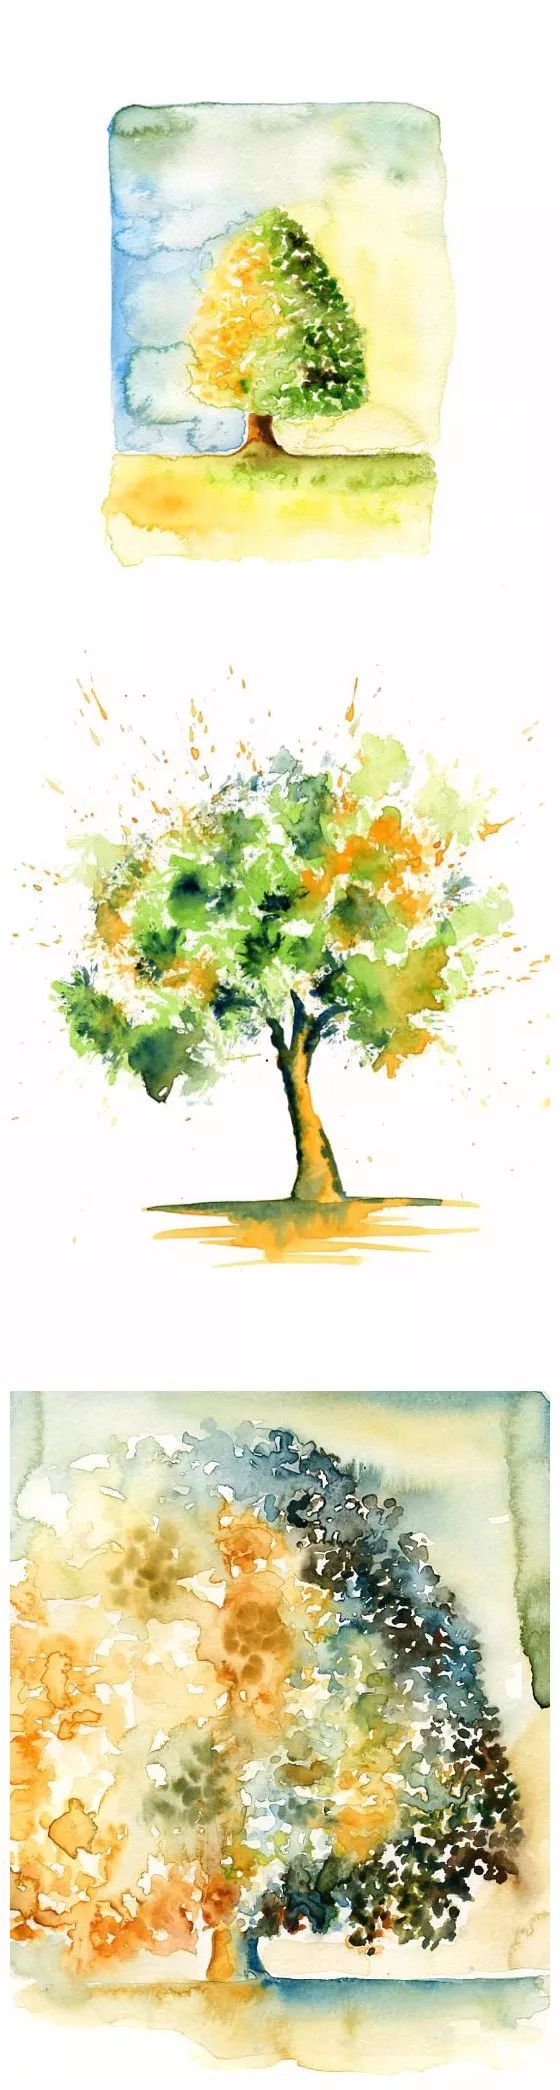 27种树的水彩画,你喜欢哪一棵?